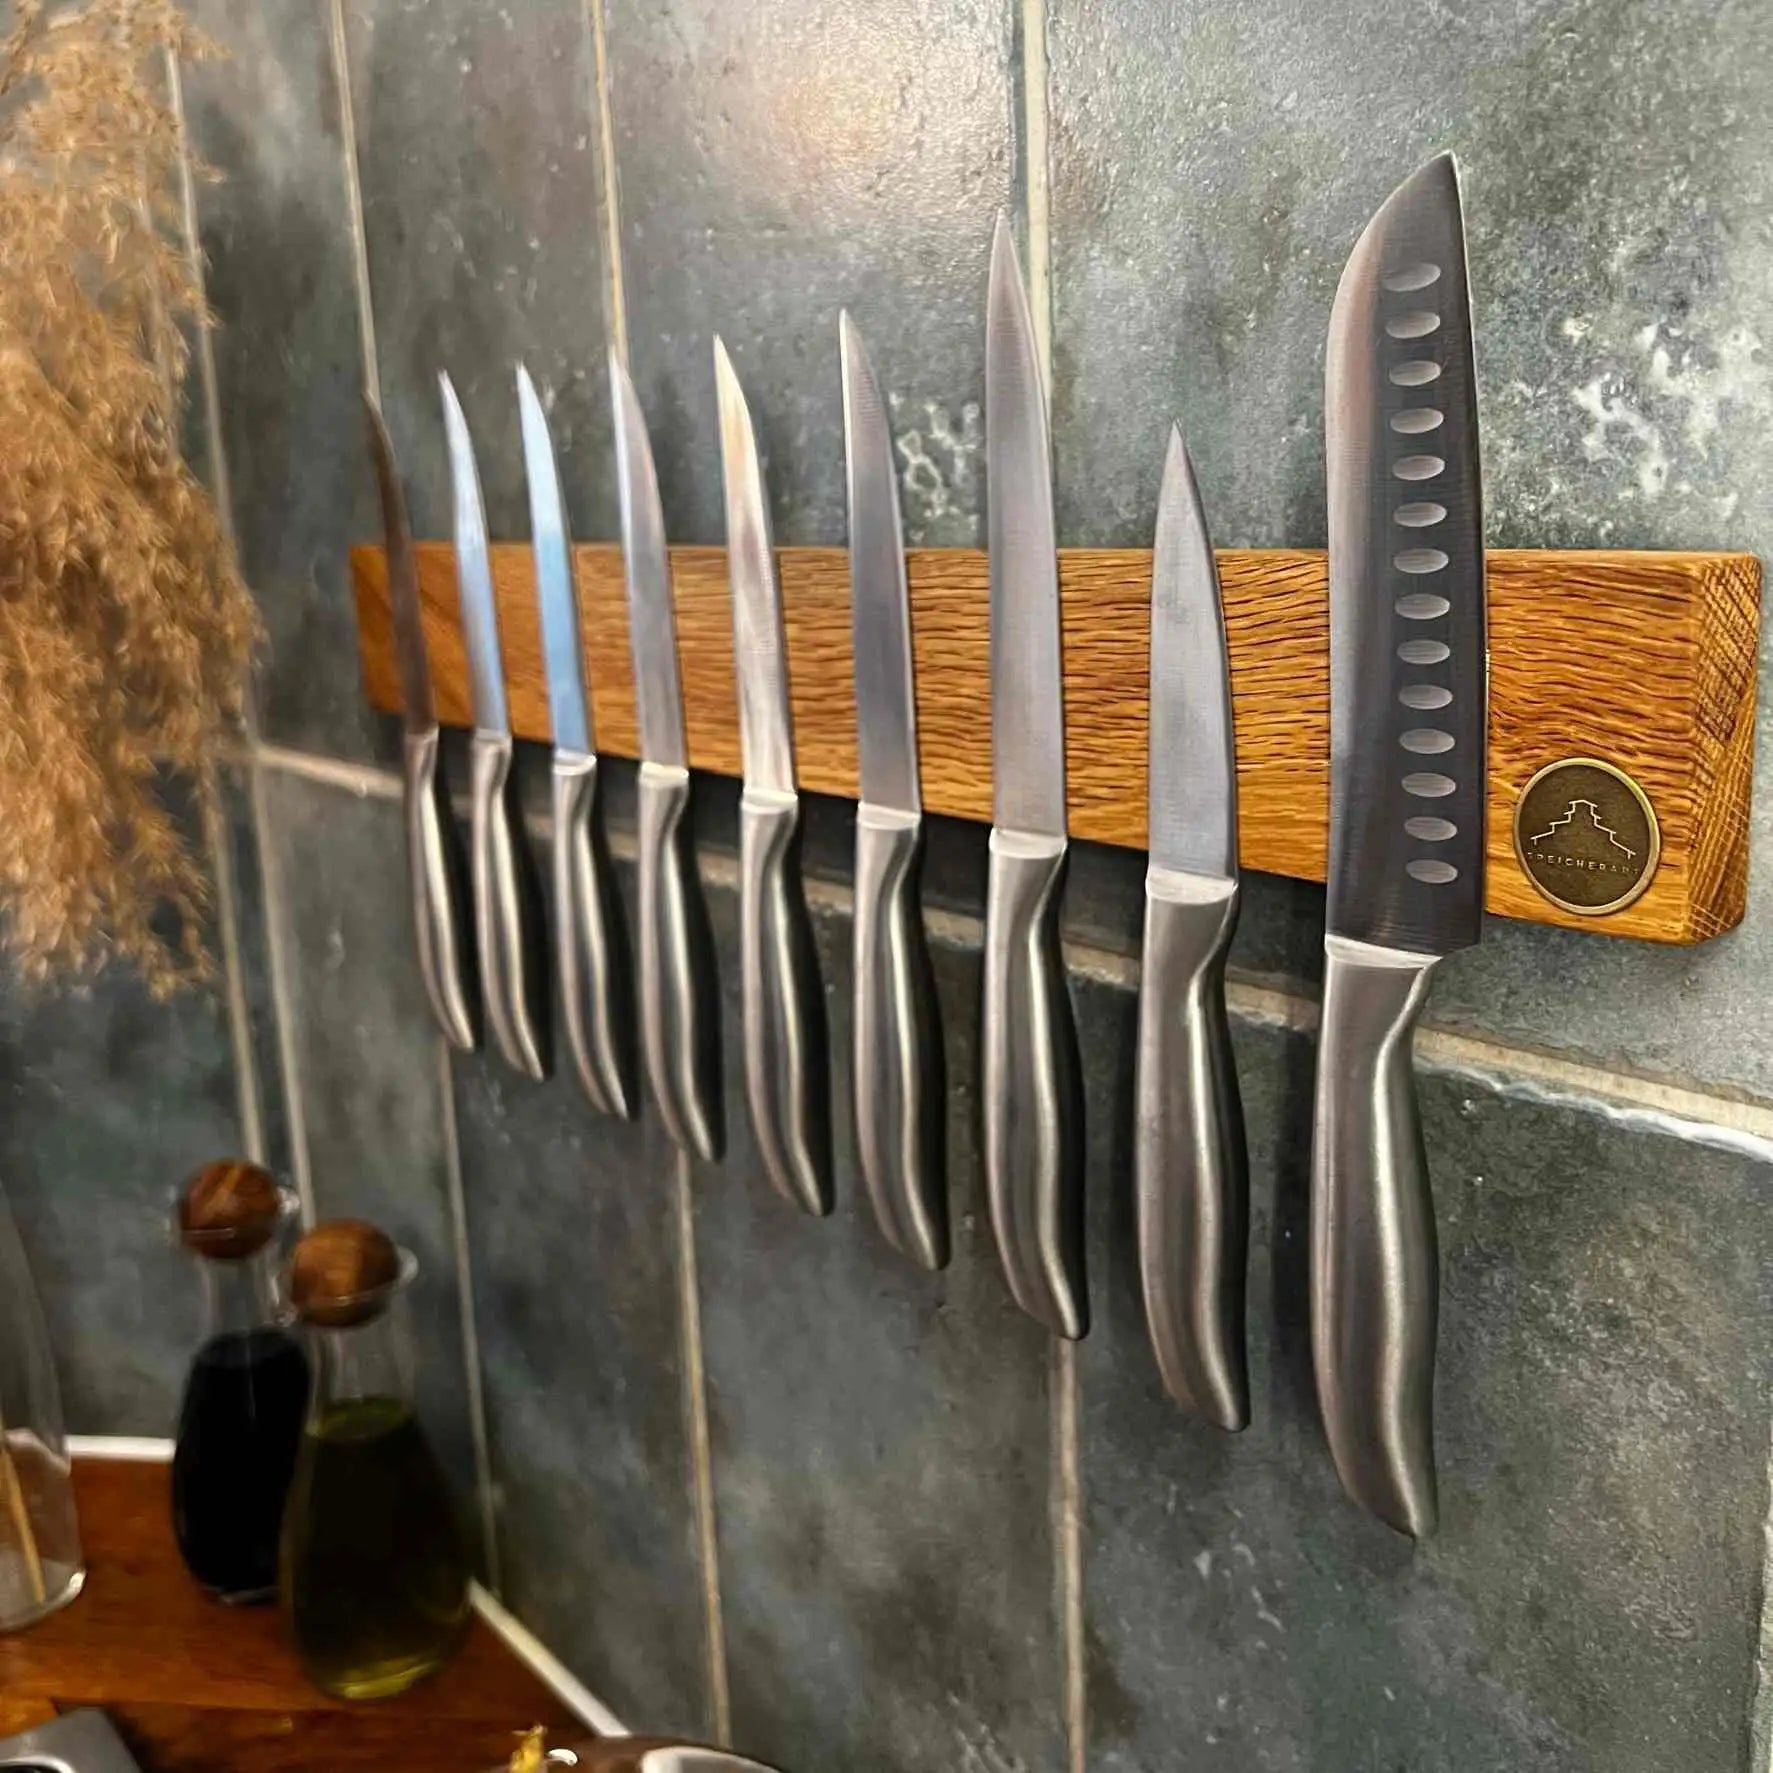 Messer sicher und stilvoll aufbewahren – entdecke die Magnetleiste Oskar.